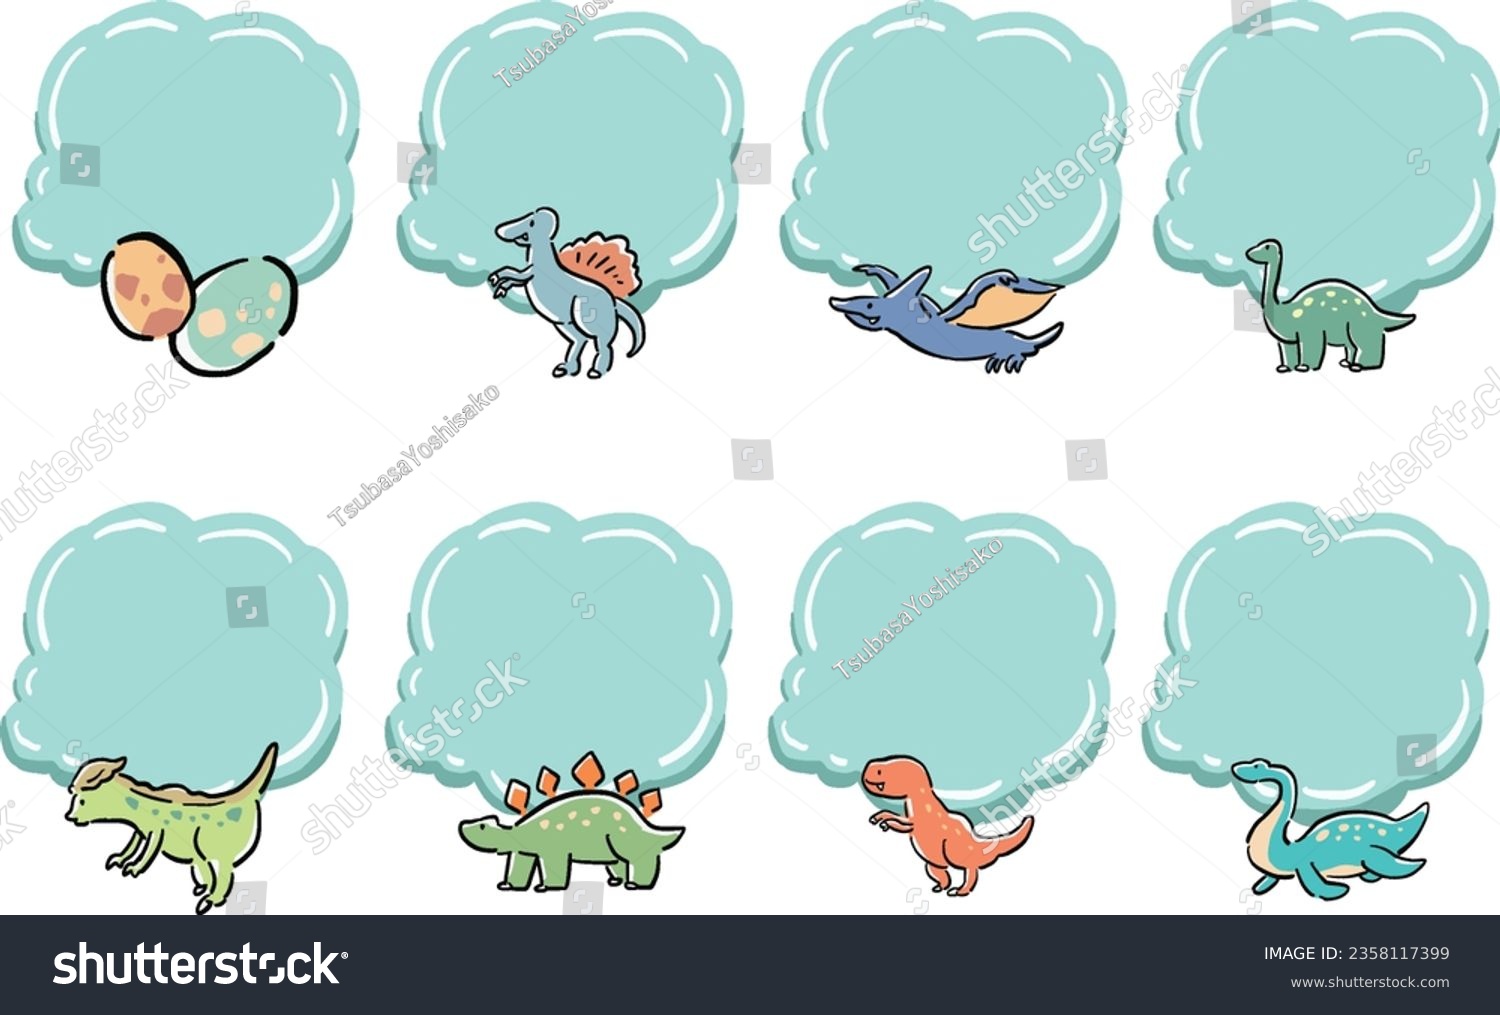 SVG of Hand drawn wind cloud shape frame illustration set of dinosaurs svg